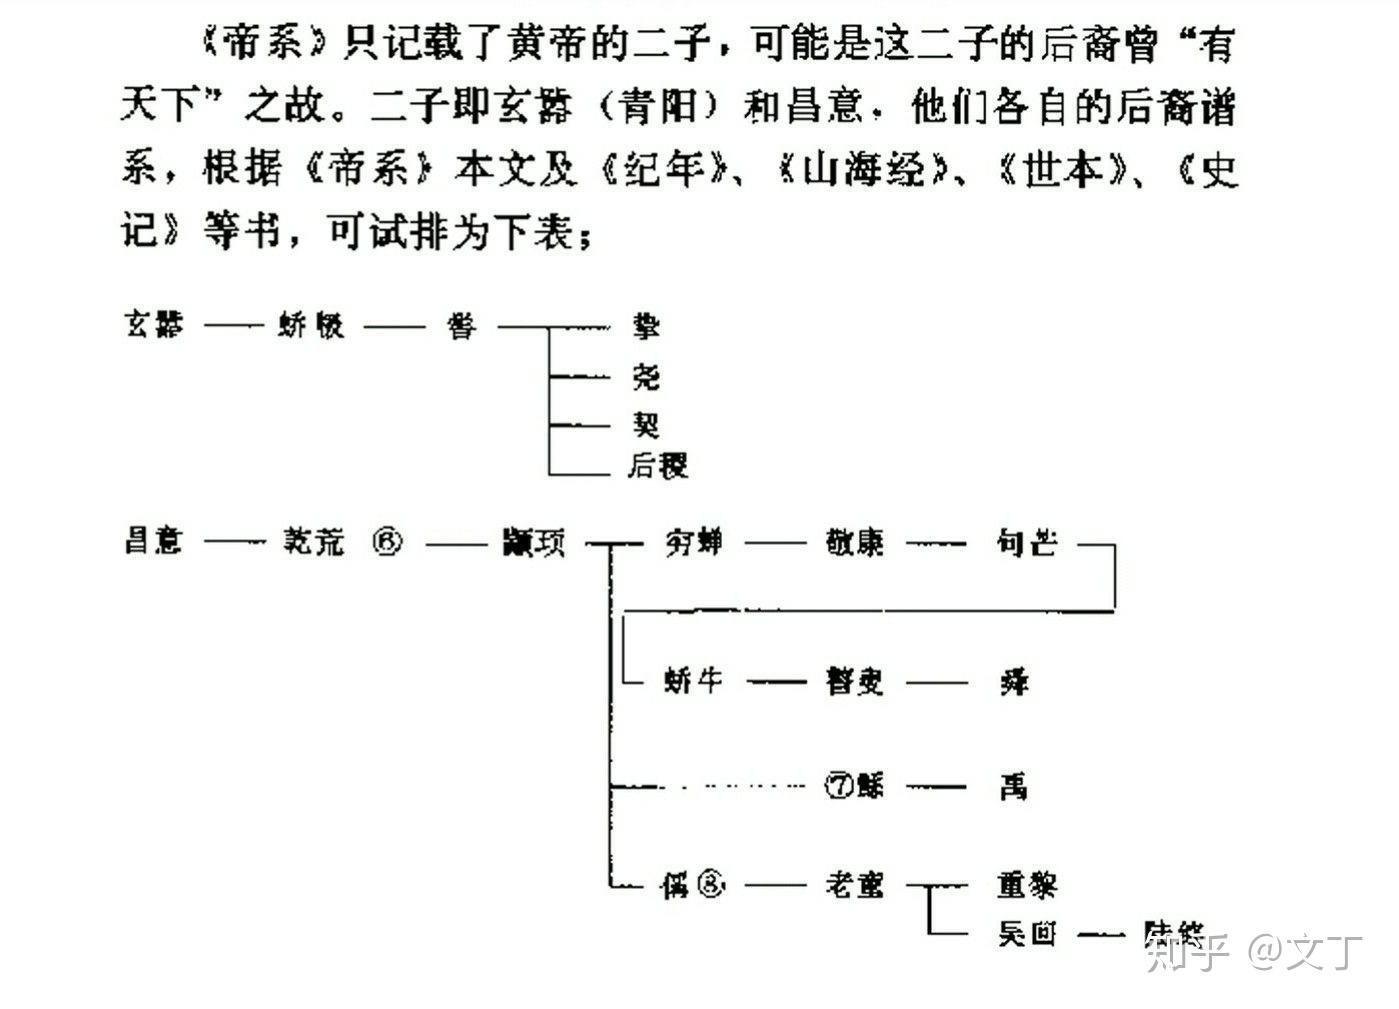 黄帝家族谱系表图片